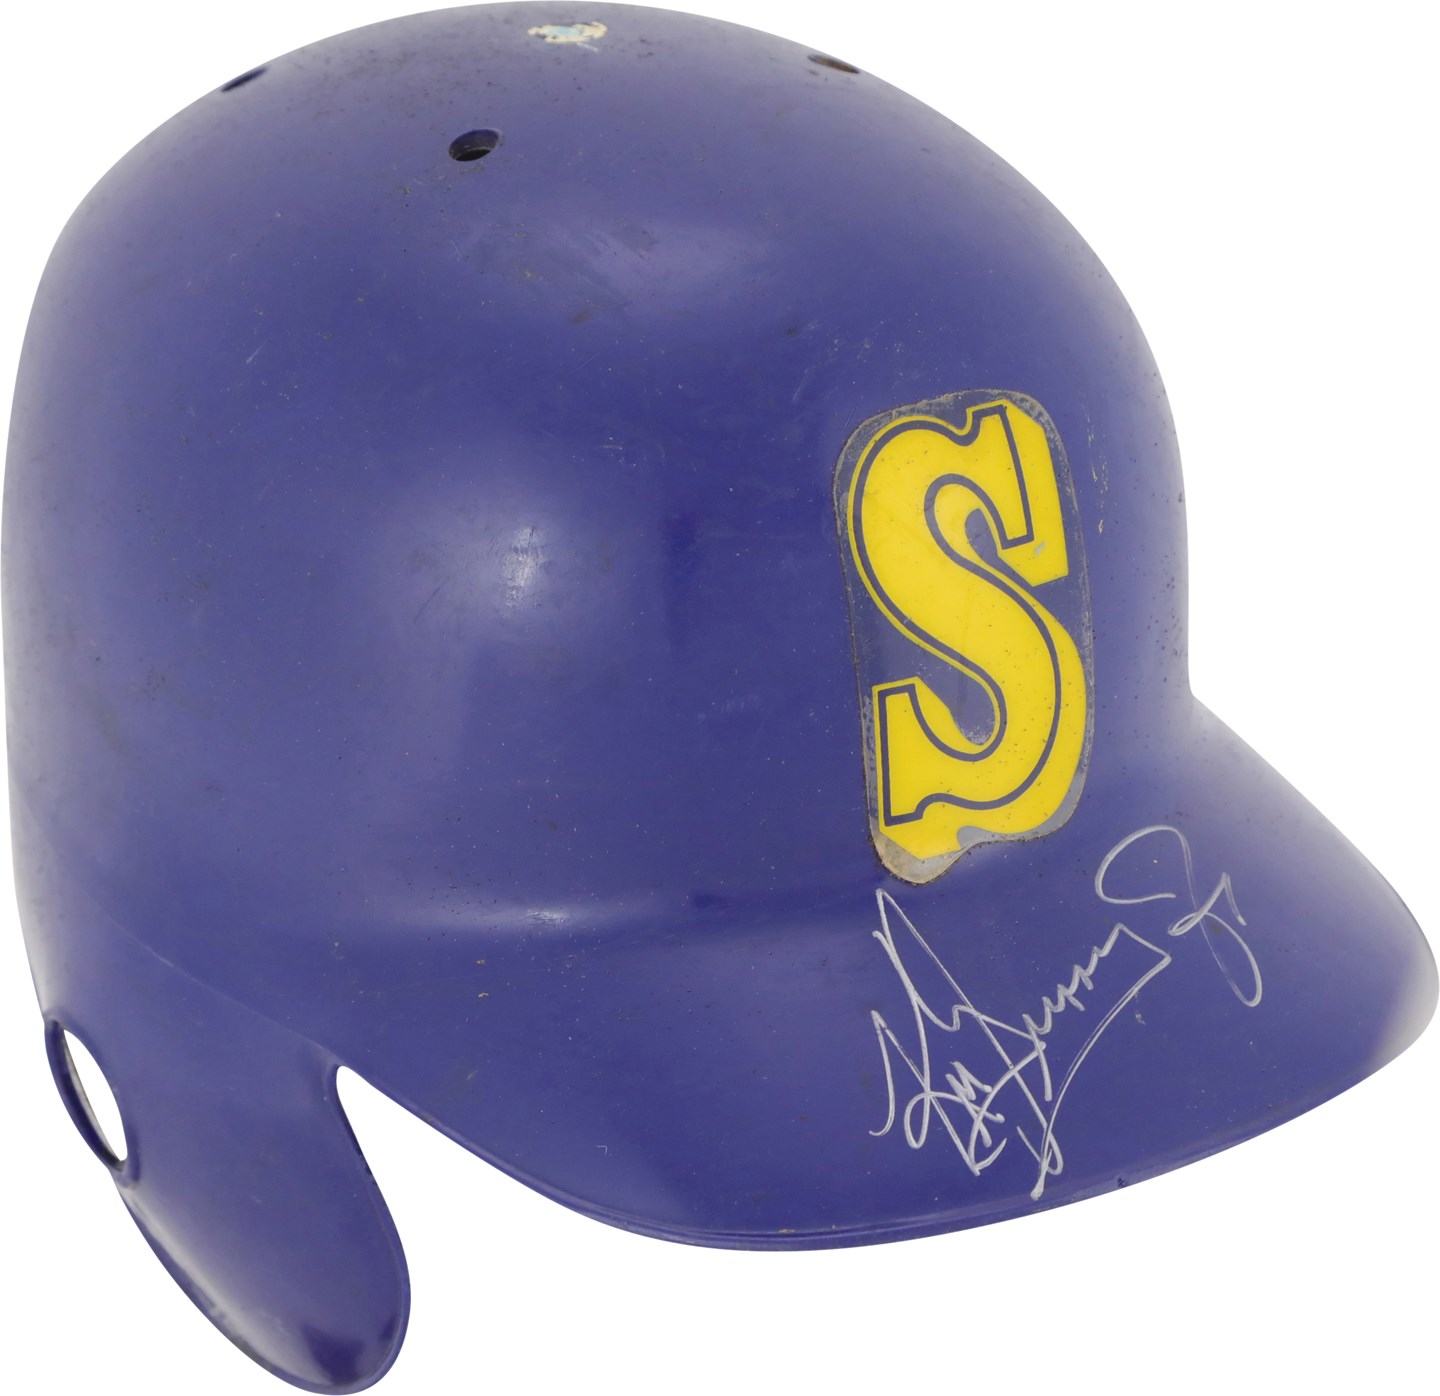 - 1990 Ken Griffey Jr. Rookie-Era Seattle Mariners Signed Game Used Helmet (JSA)